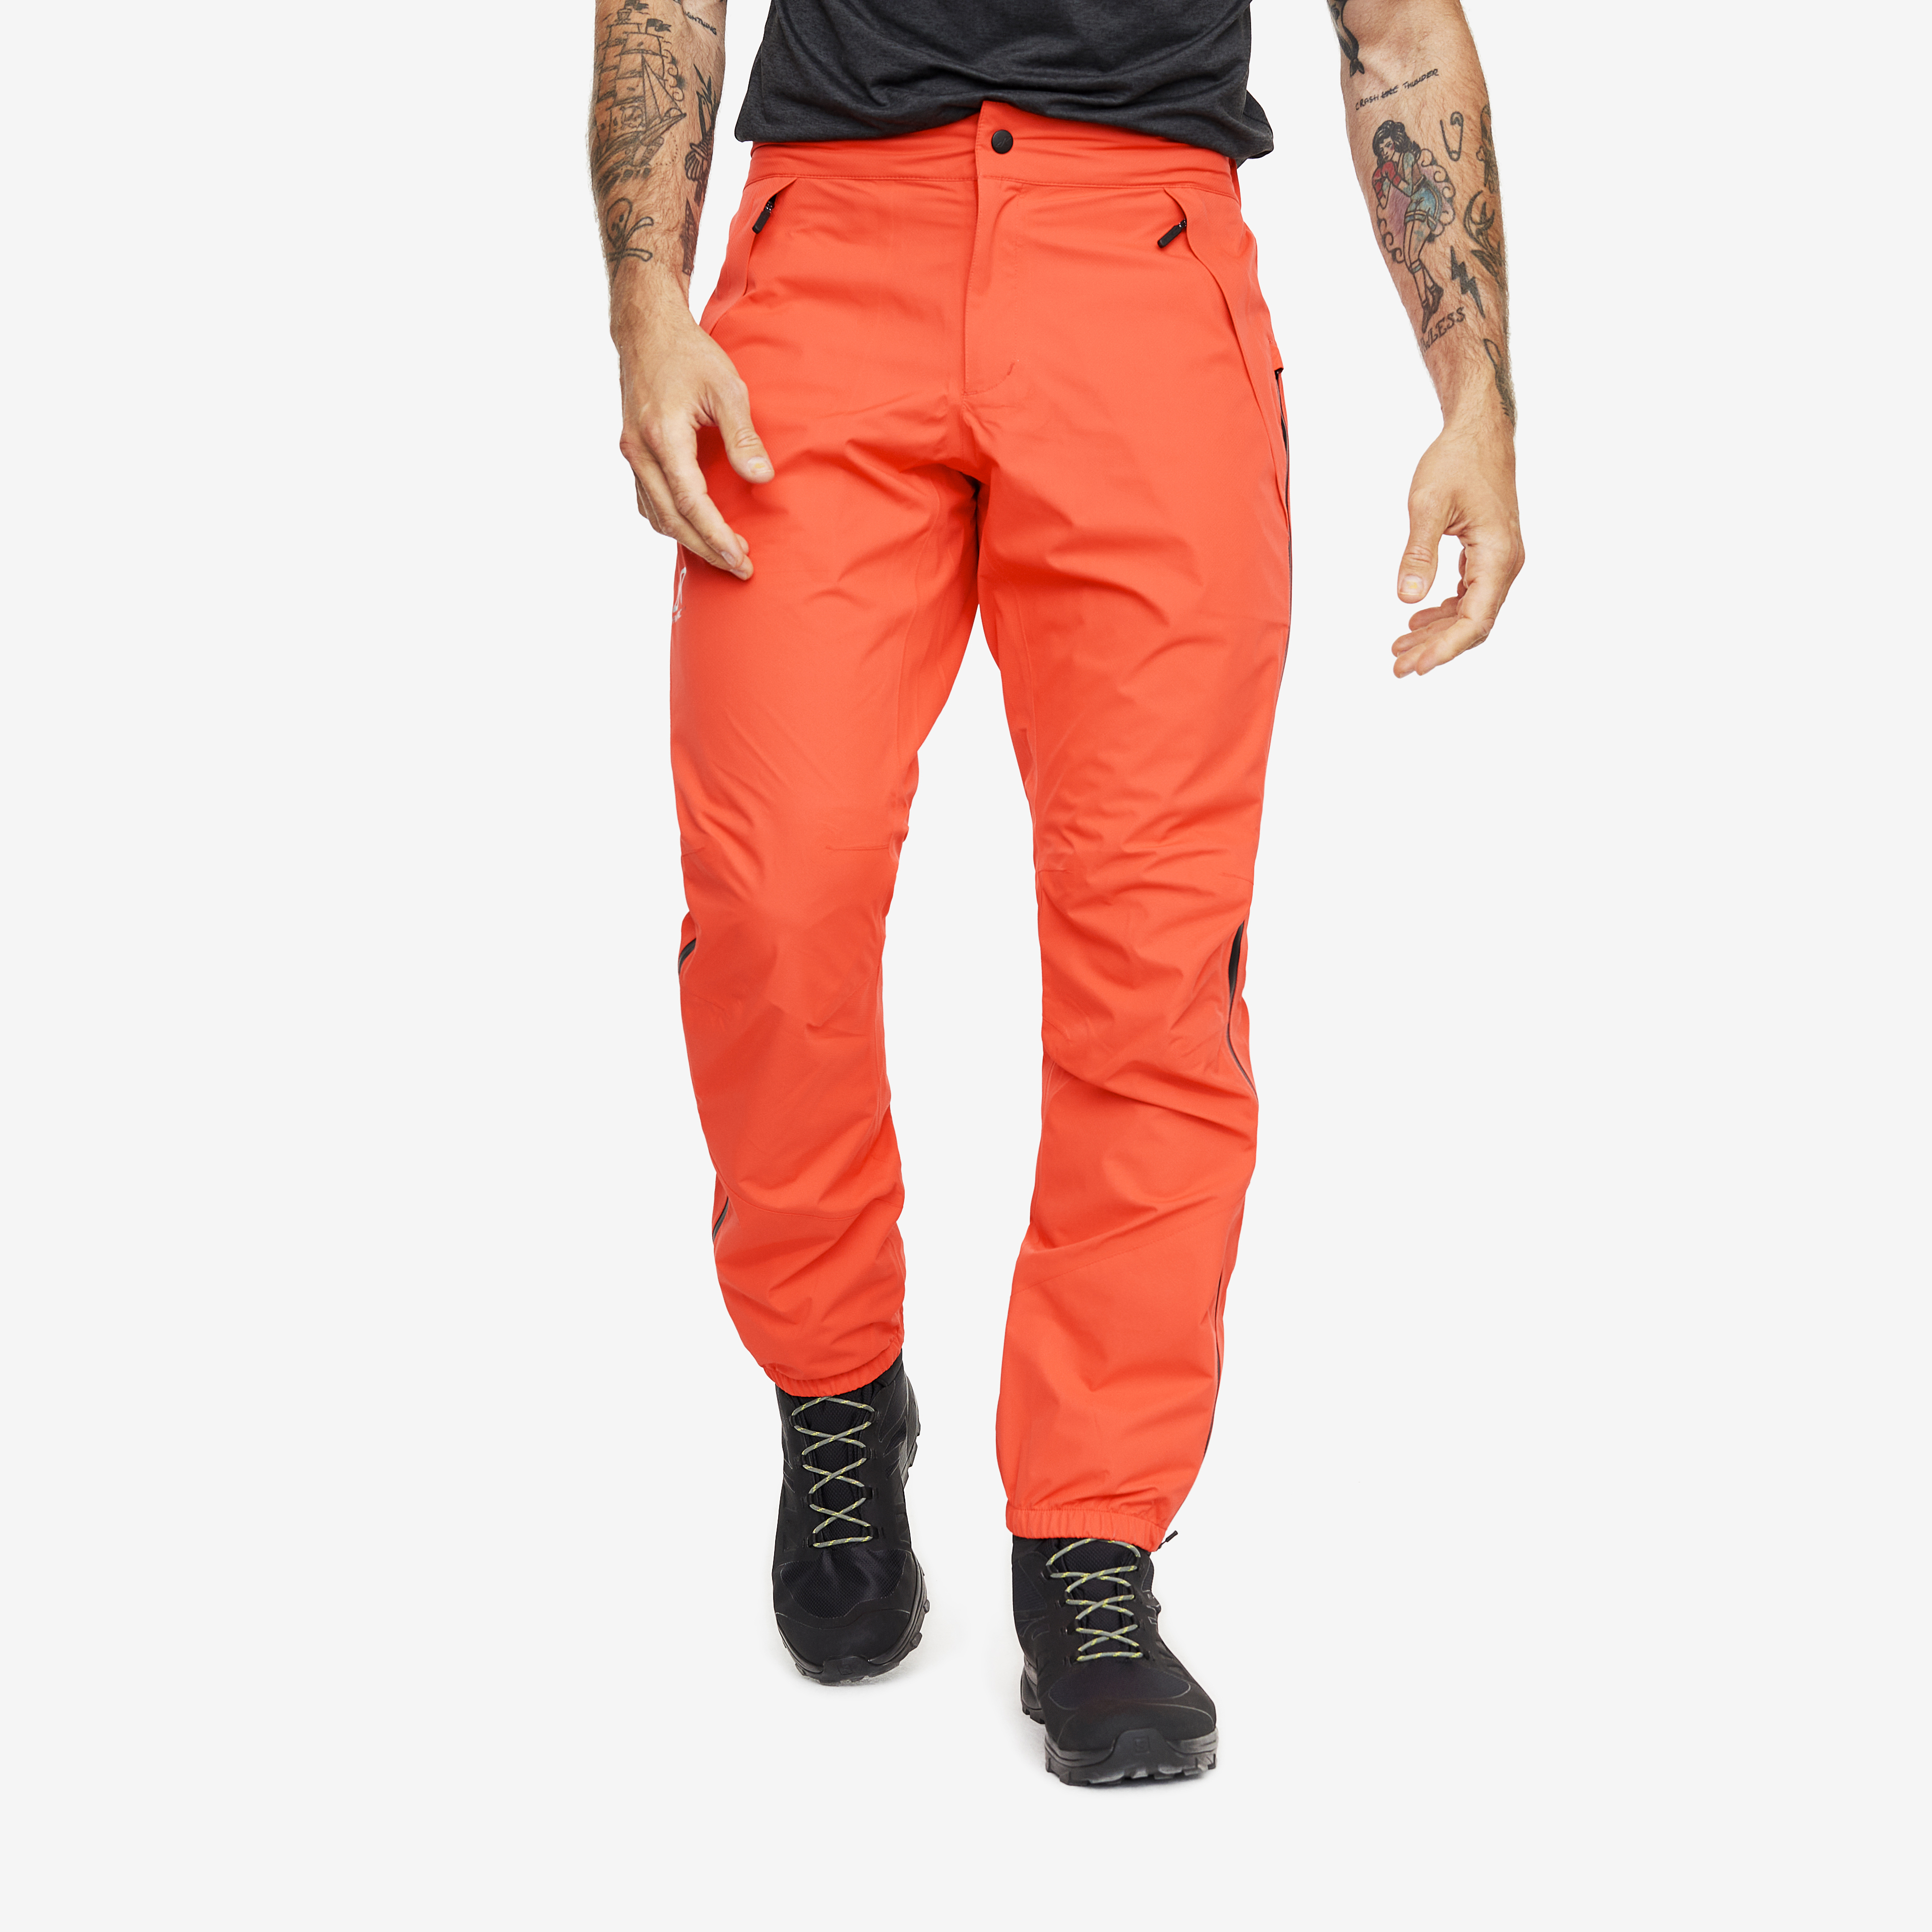 Typhoon rain pants for men in orange